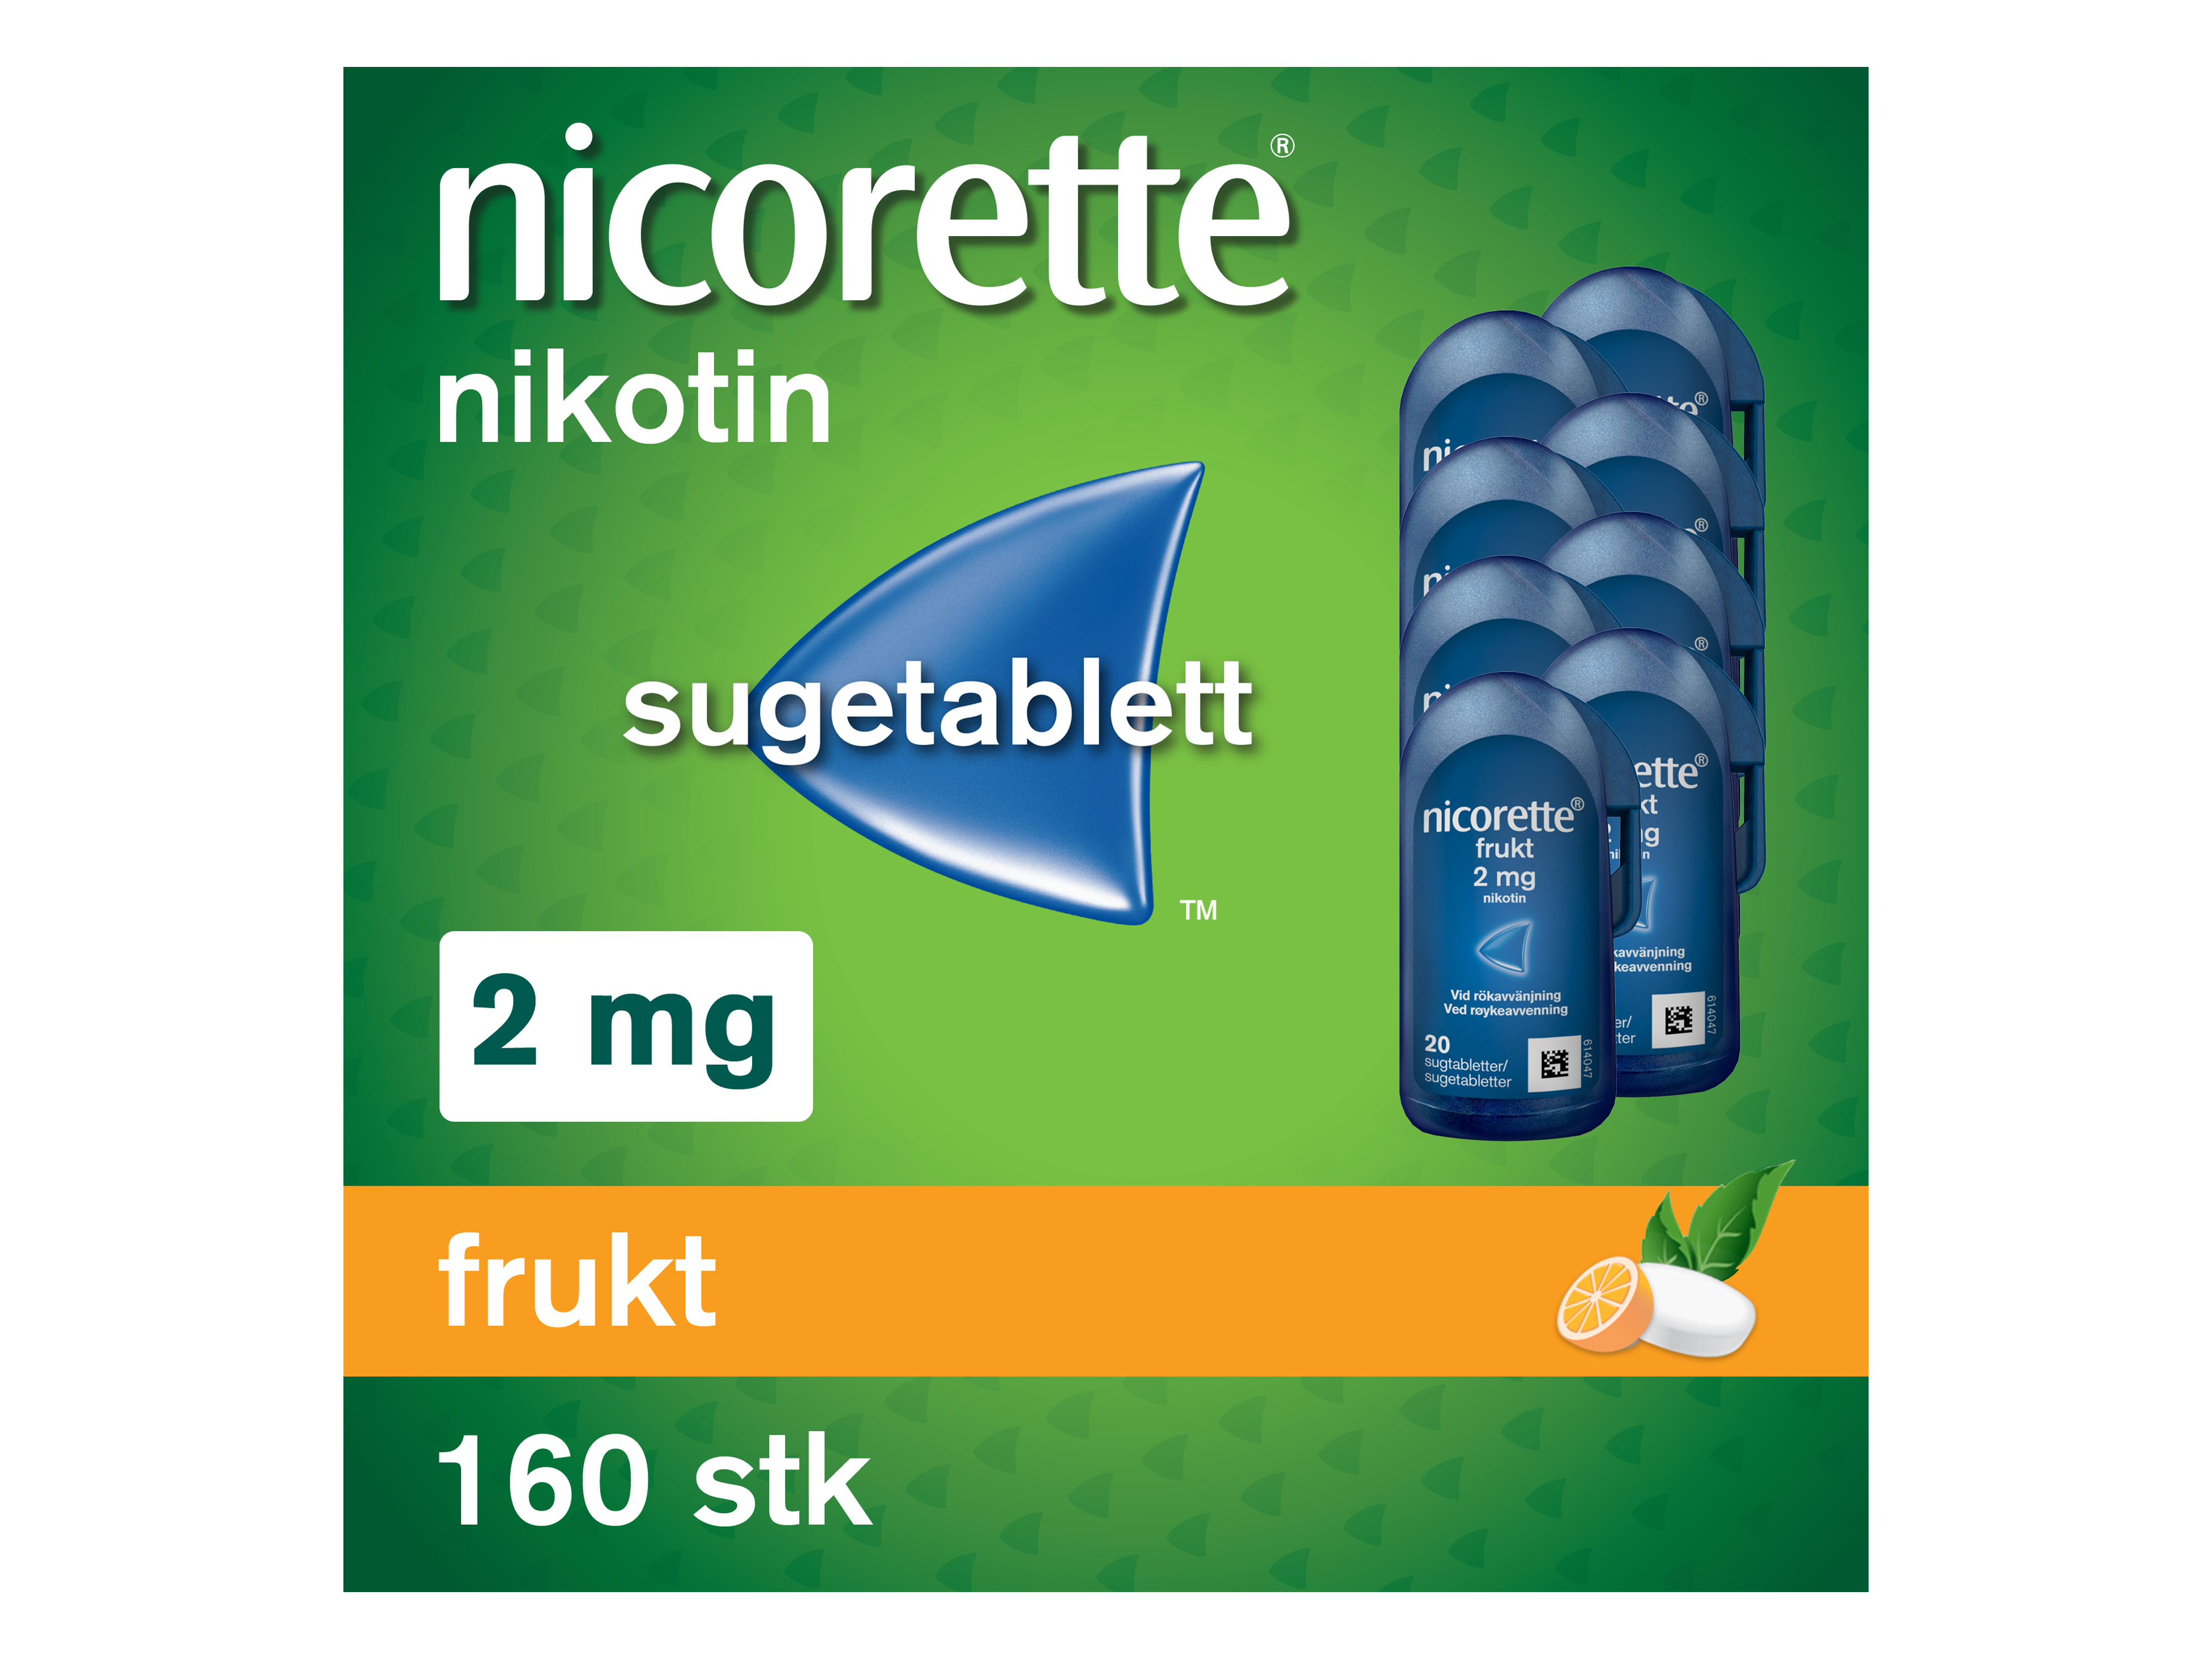 Nicorette Sugetablett, 2 mg nikotin, Frukt 160 stk., Slutte å røyke